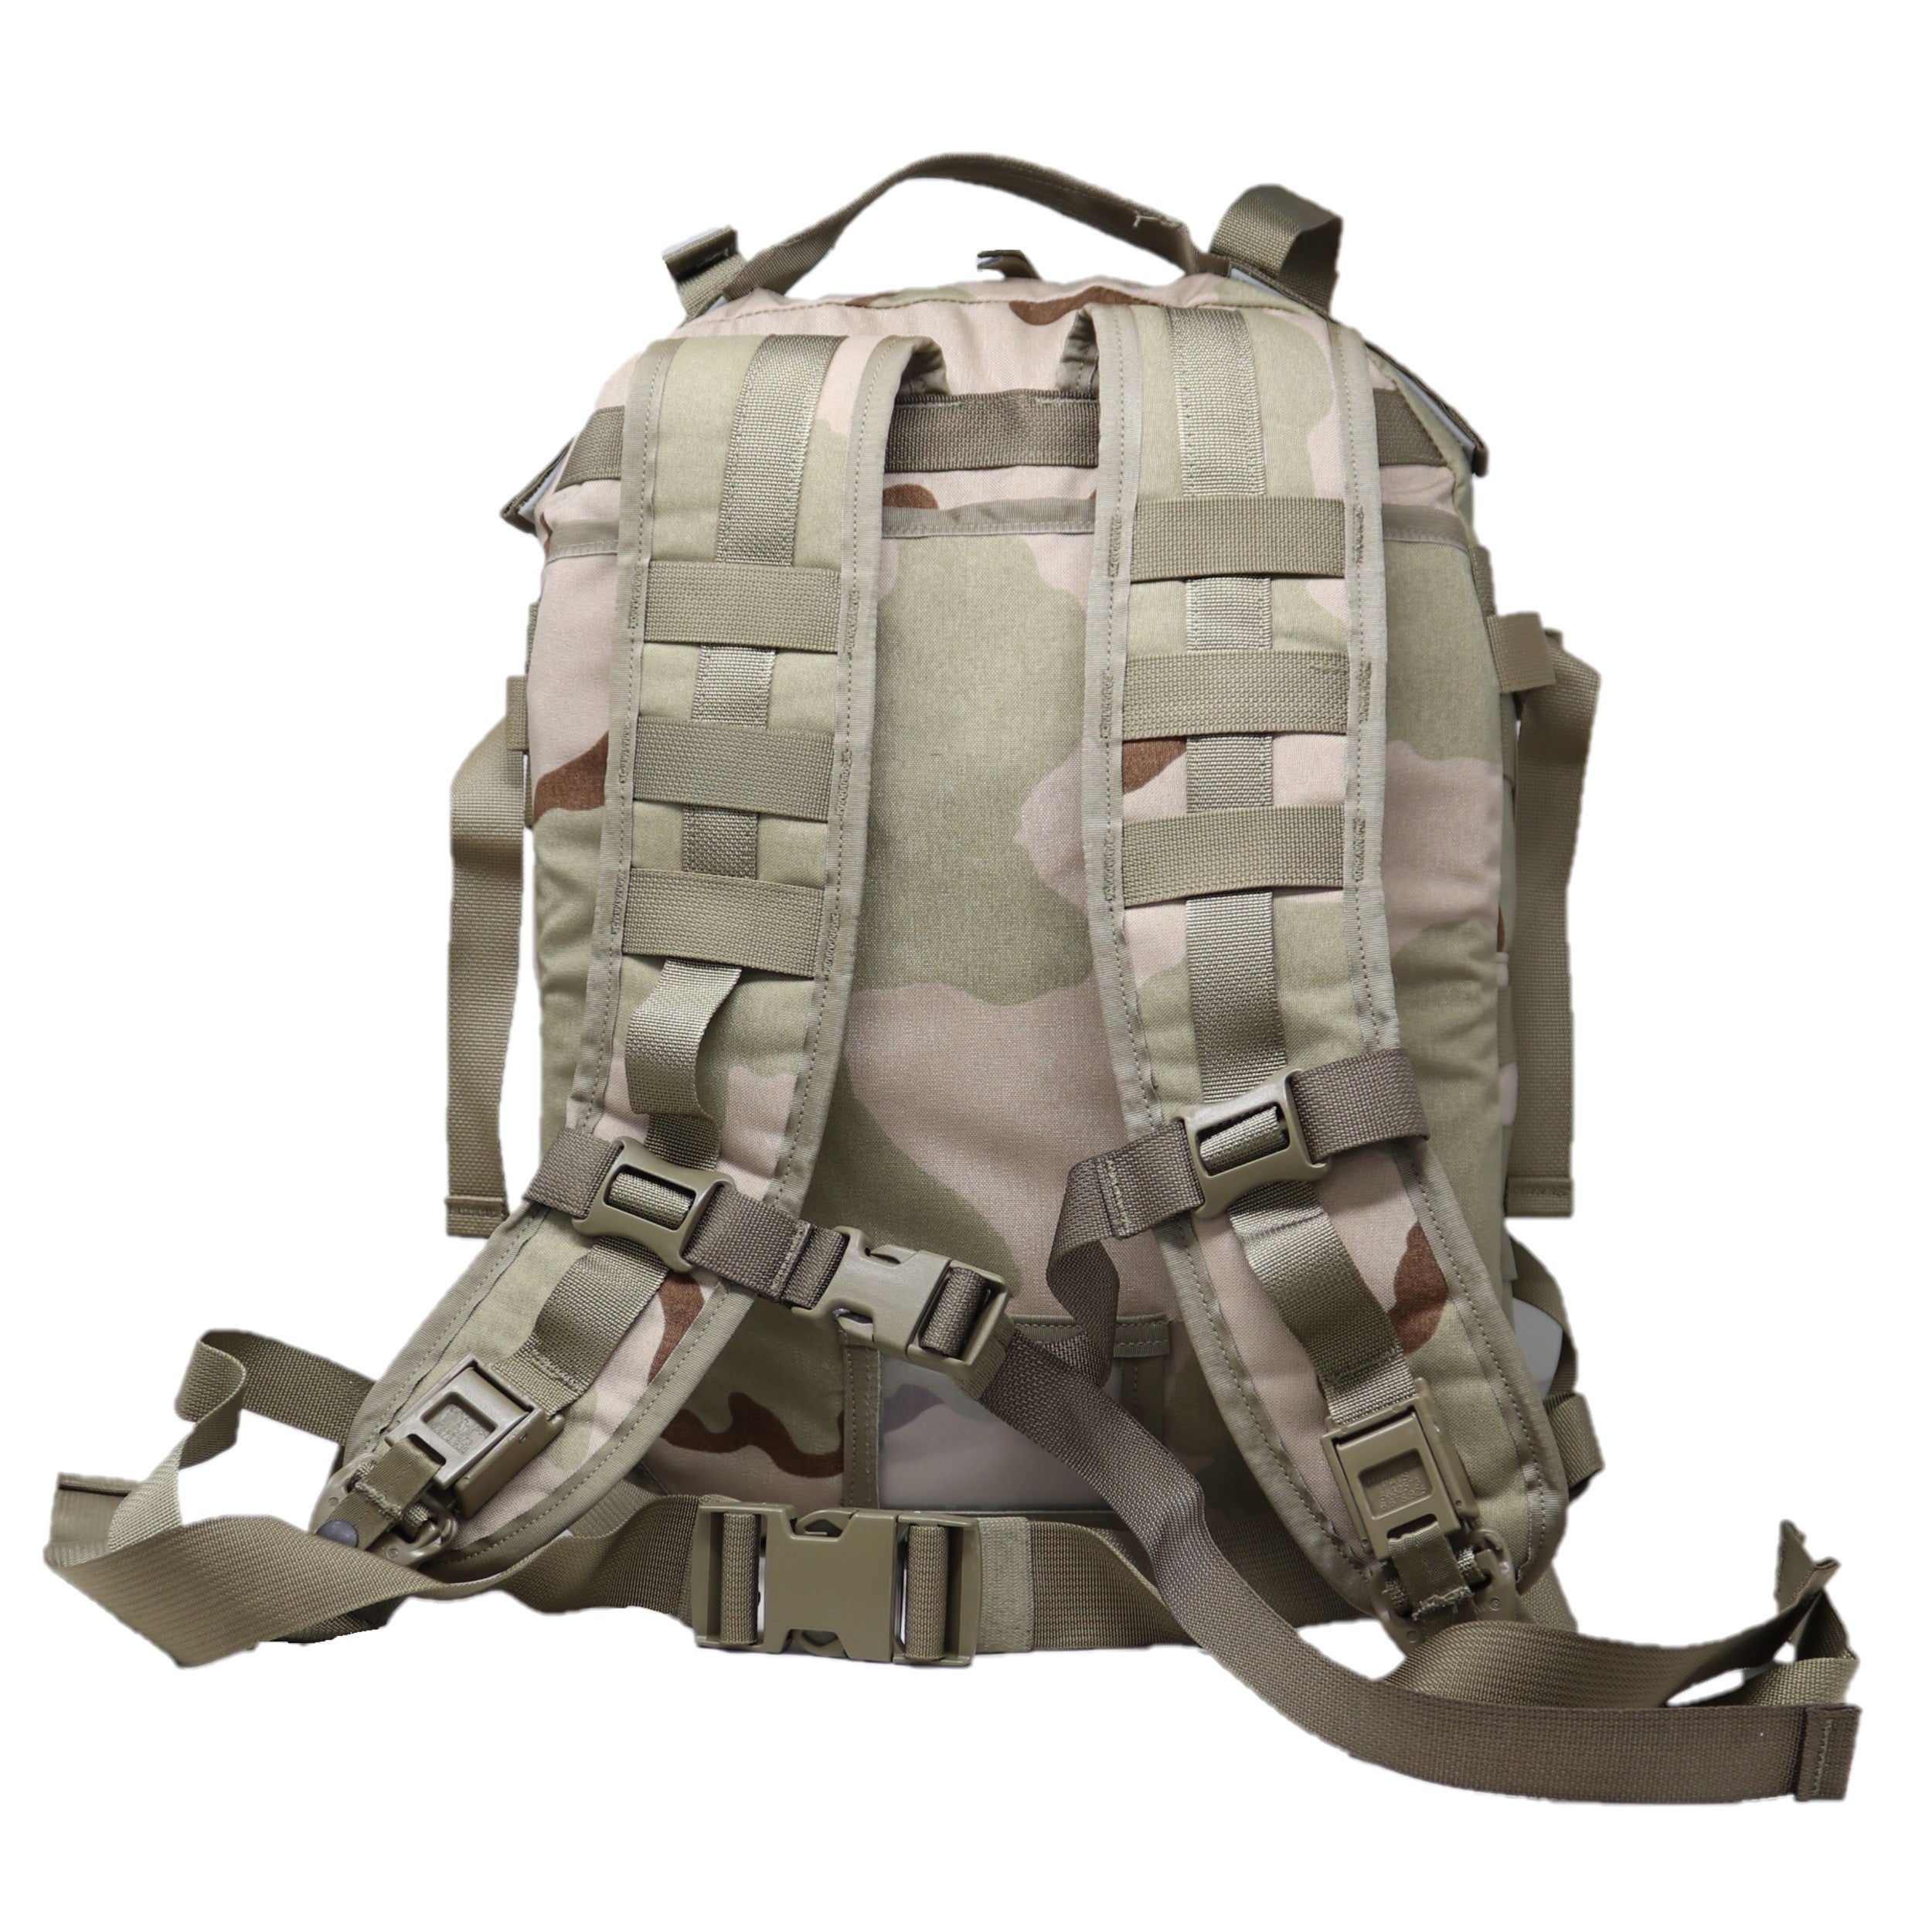  35L Army 3 Days Assault Pack Molle Bag con puerto de